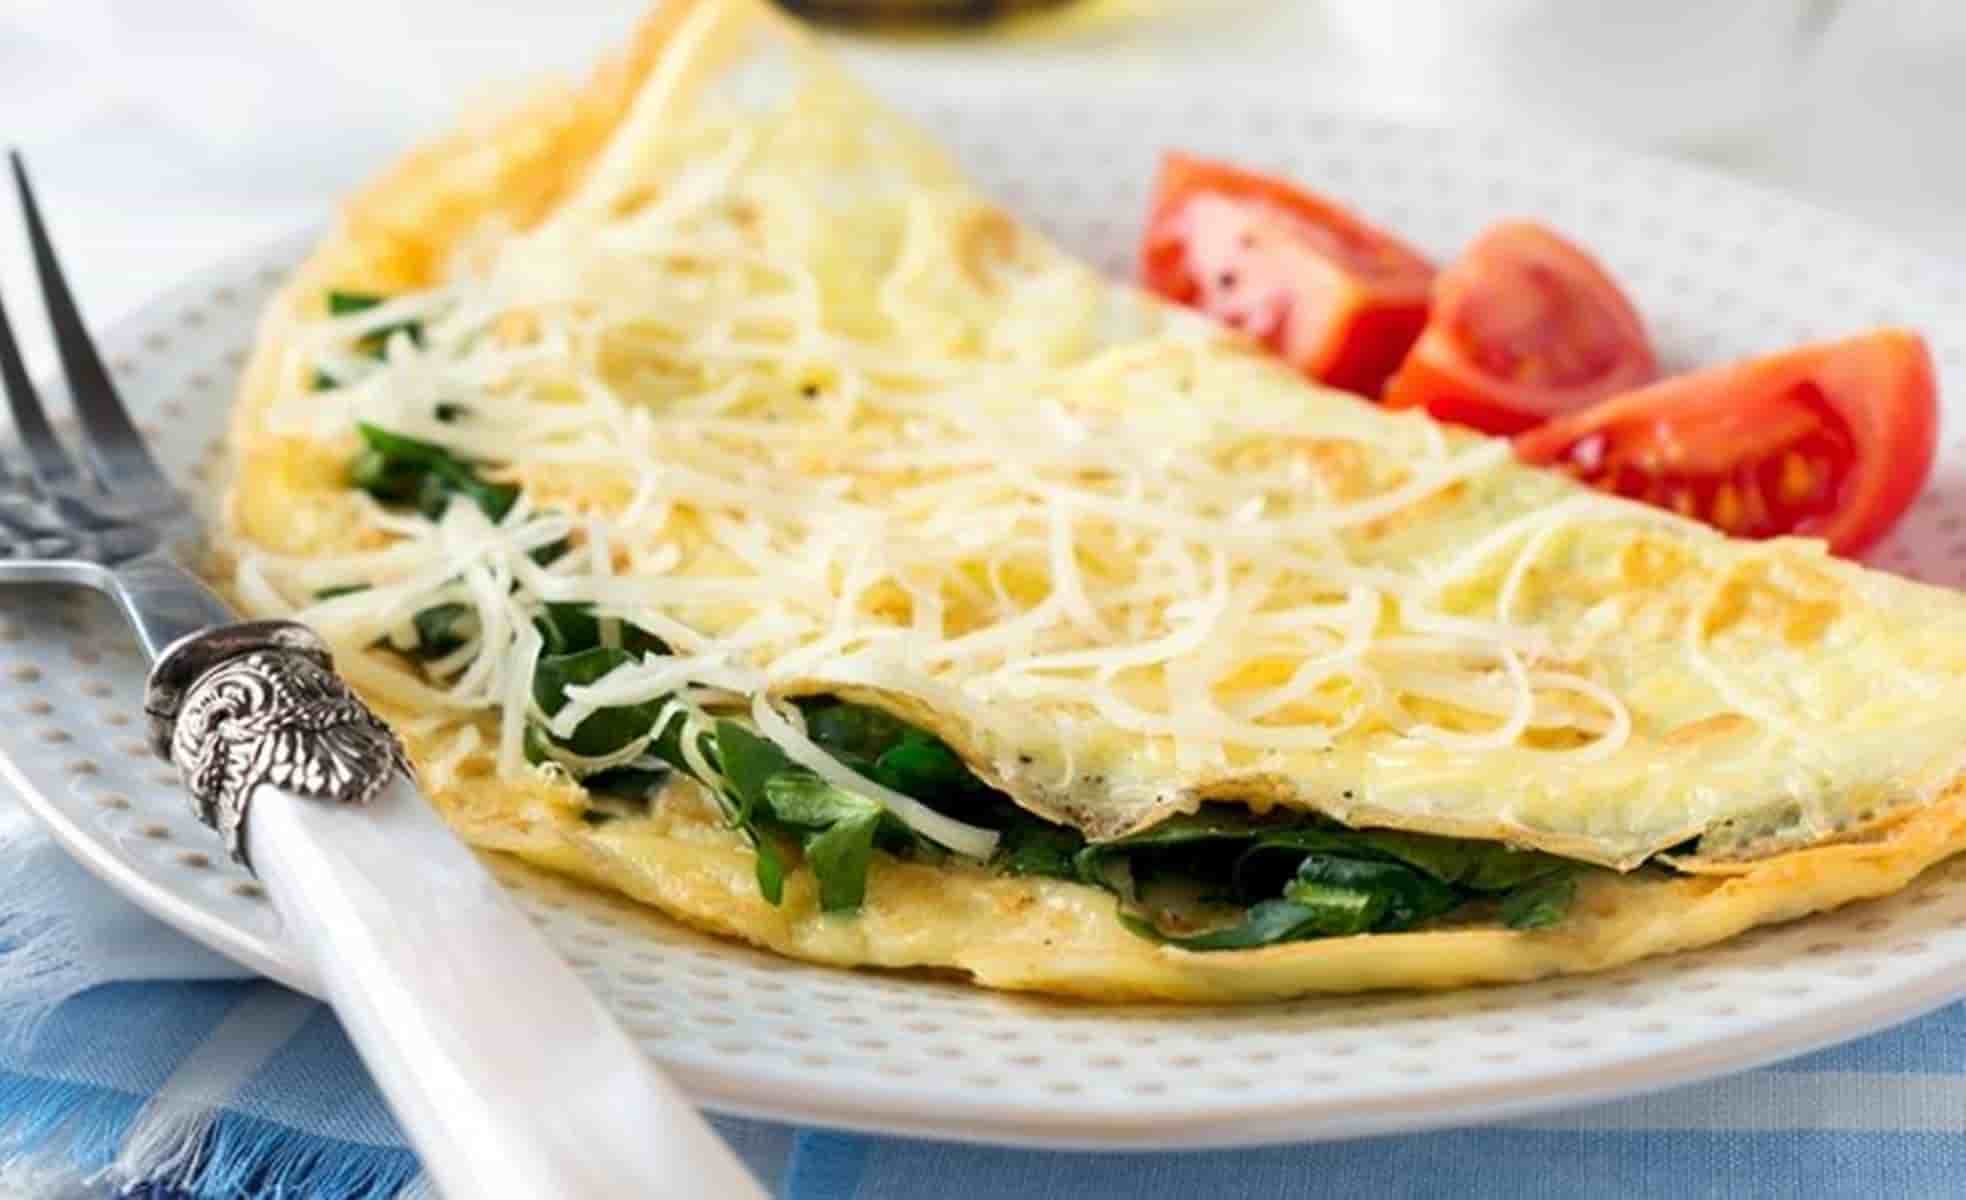 Desfrute de um café da manhã saudável com este omelete diferenciado